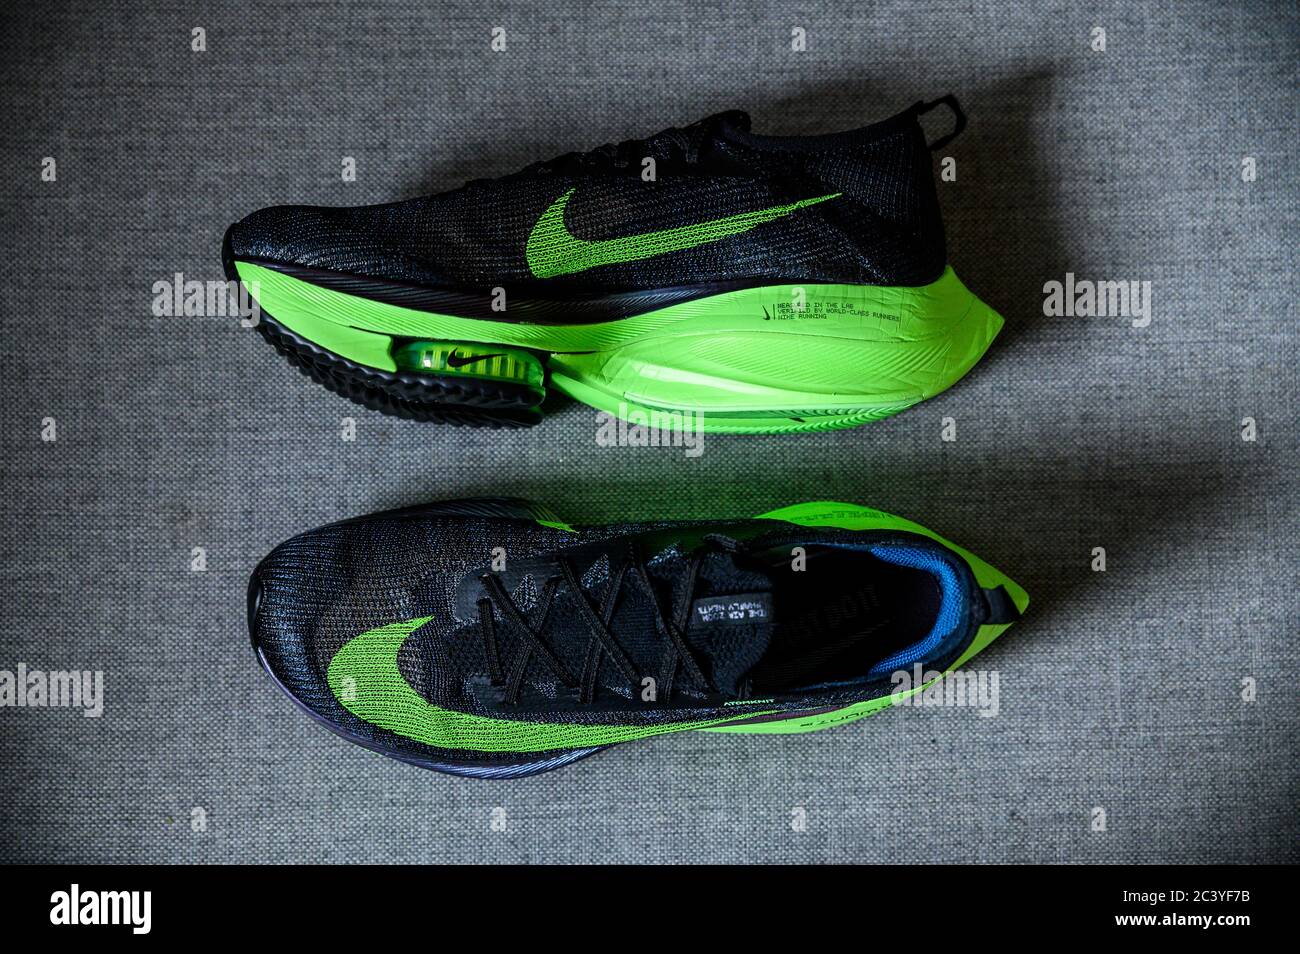 ROME, ITALIE, JUIN 23. 2020: Nike Running chaussures ALPHAFLY NEXT%.  Chaussure de marathon vert, noir et controversé. Détails sur la mousse Air  Zoomx, Zoom Air Photo Stock - Alamy